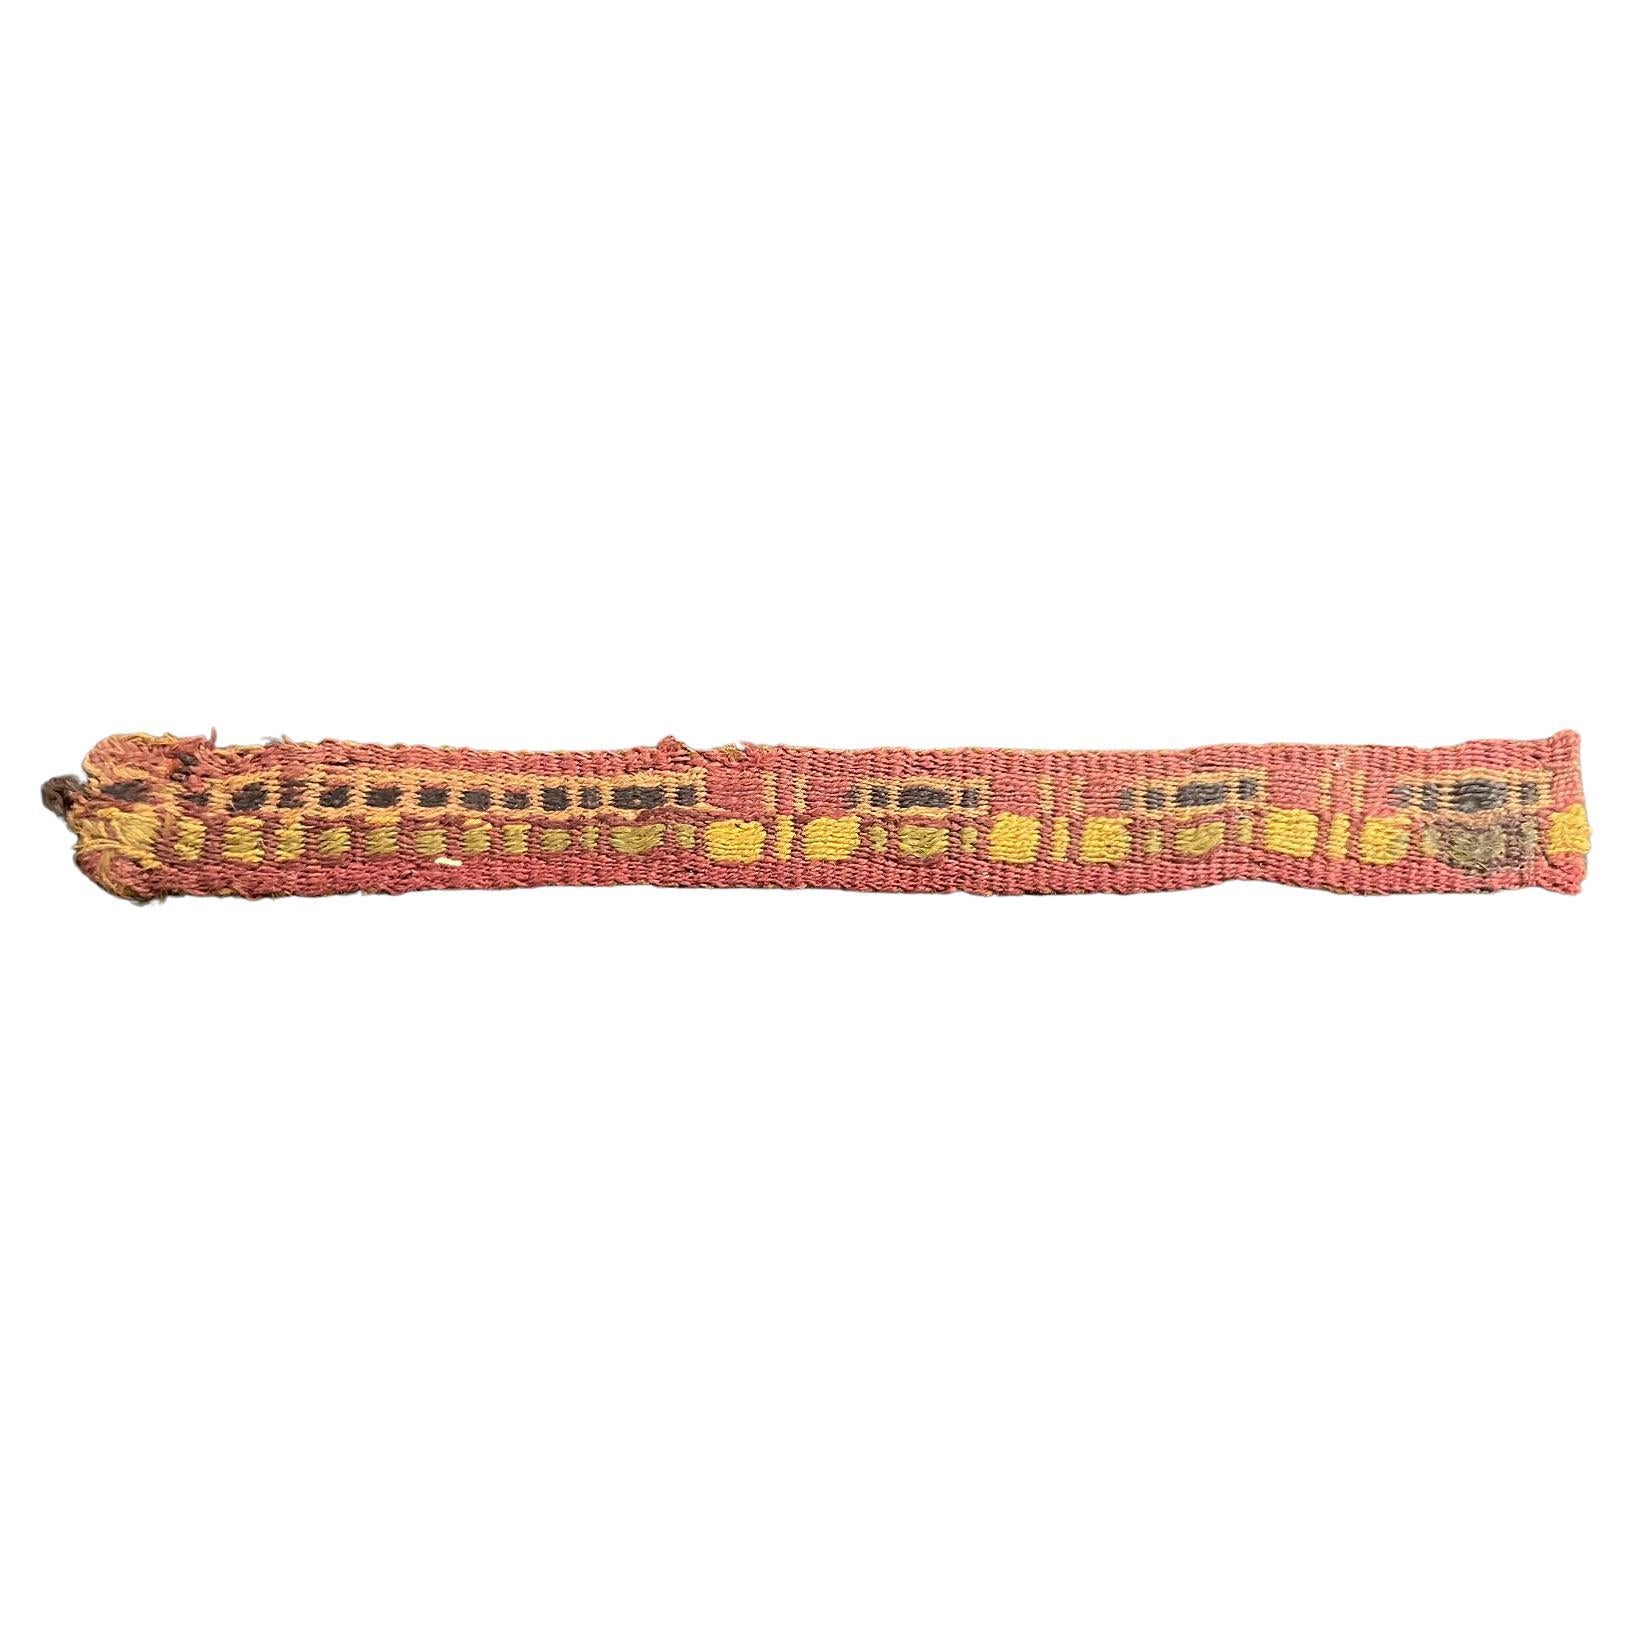 Prä-Columbianisches Textilfragment aus Chancay, Peru ca. 1100-1400 n. Chr., Ex Ferdinand Anton